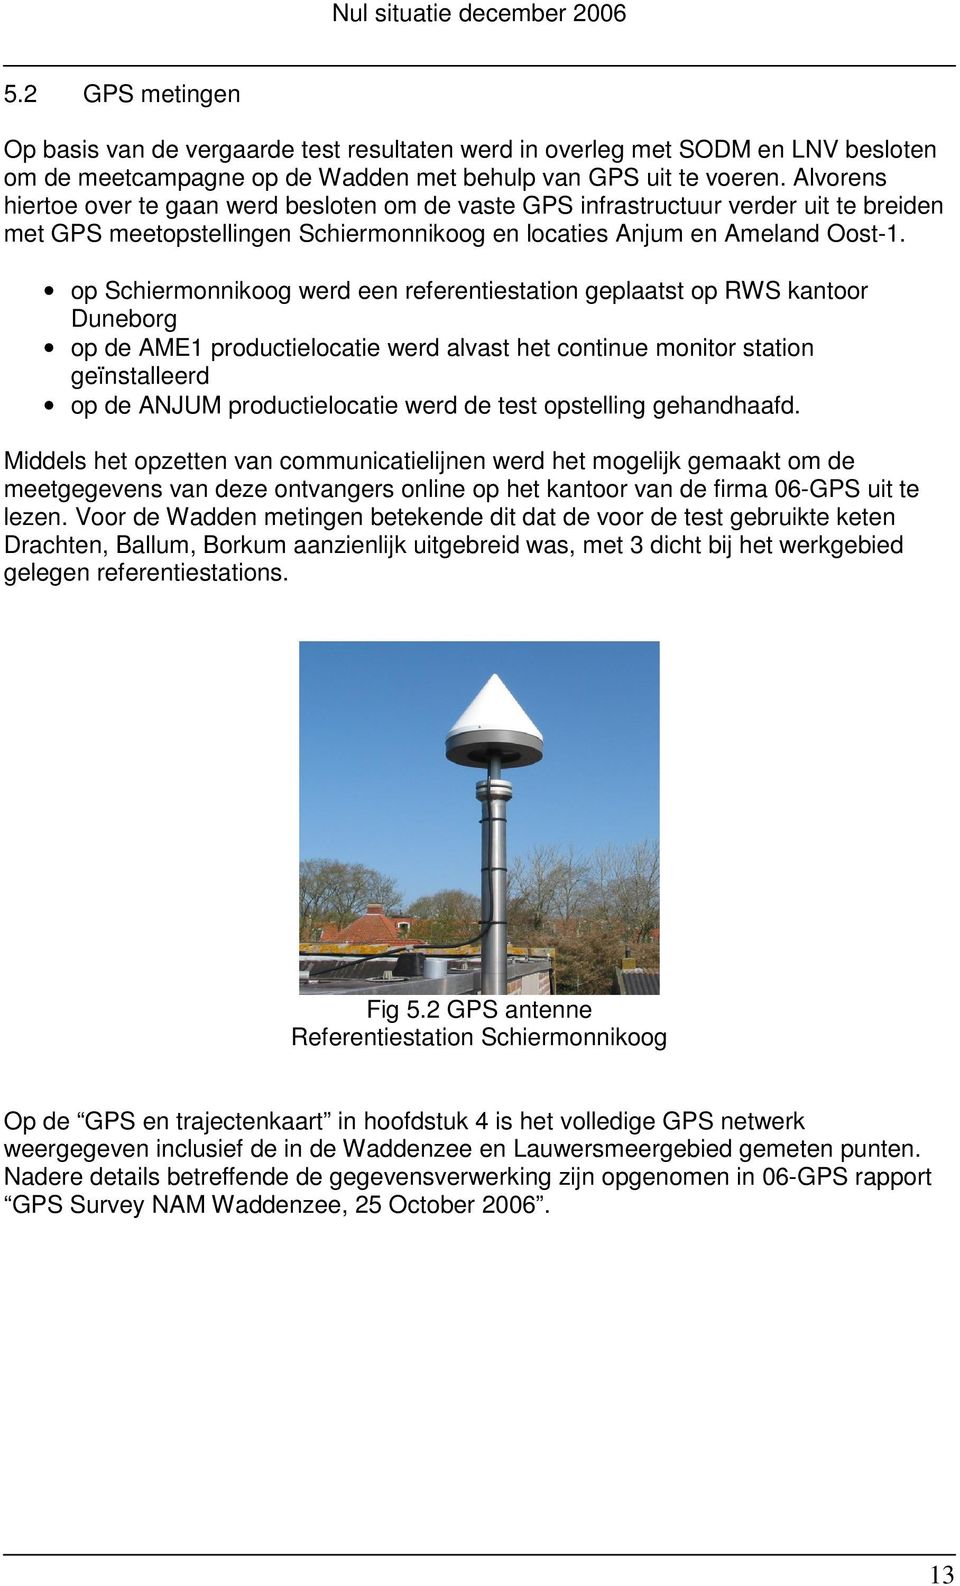 op Schiermonnikoog werd een referentiestation geplaatst op RWS kantoor Duneborg op de AME1 productielocatie werd alvast het continue monitor station geïnstalleerd op de ANJUM productielocatie werd de